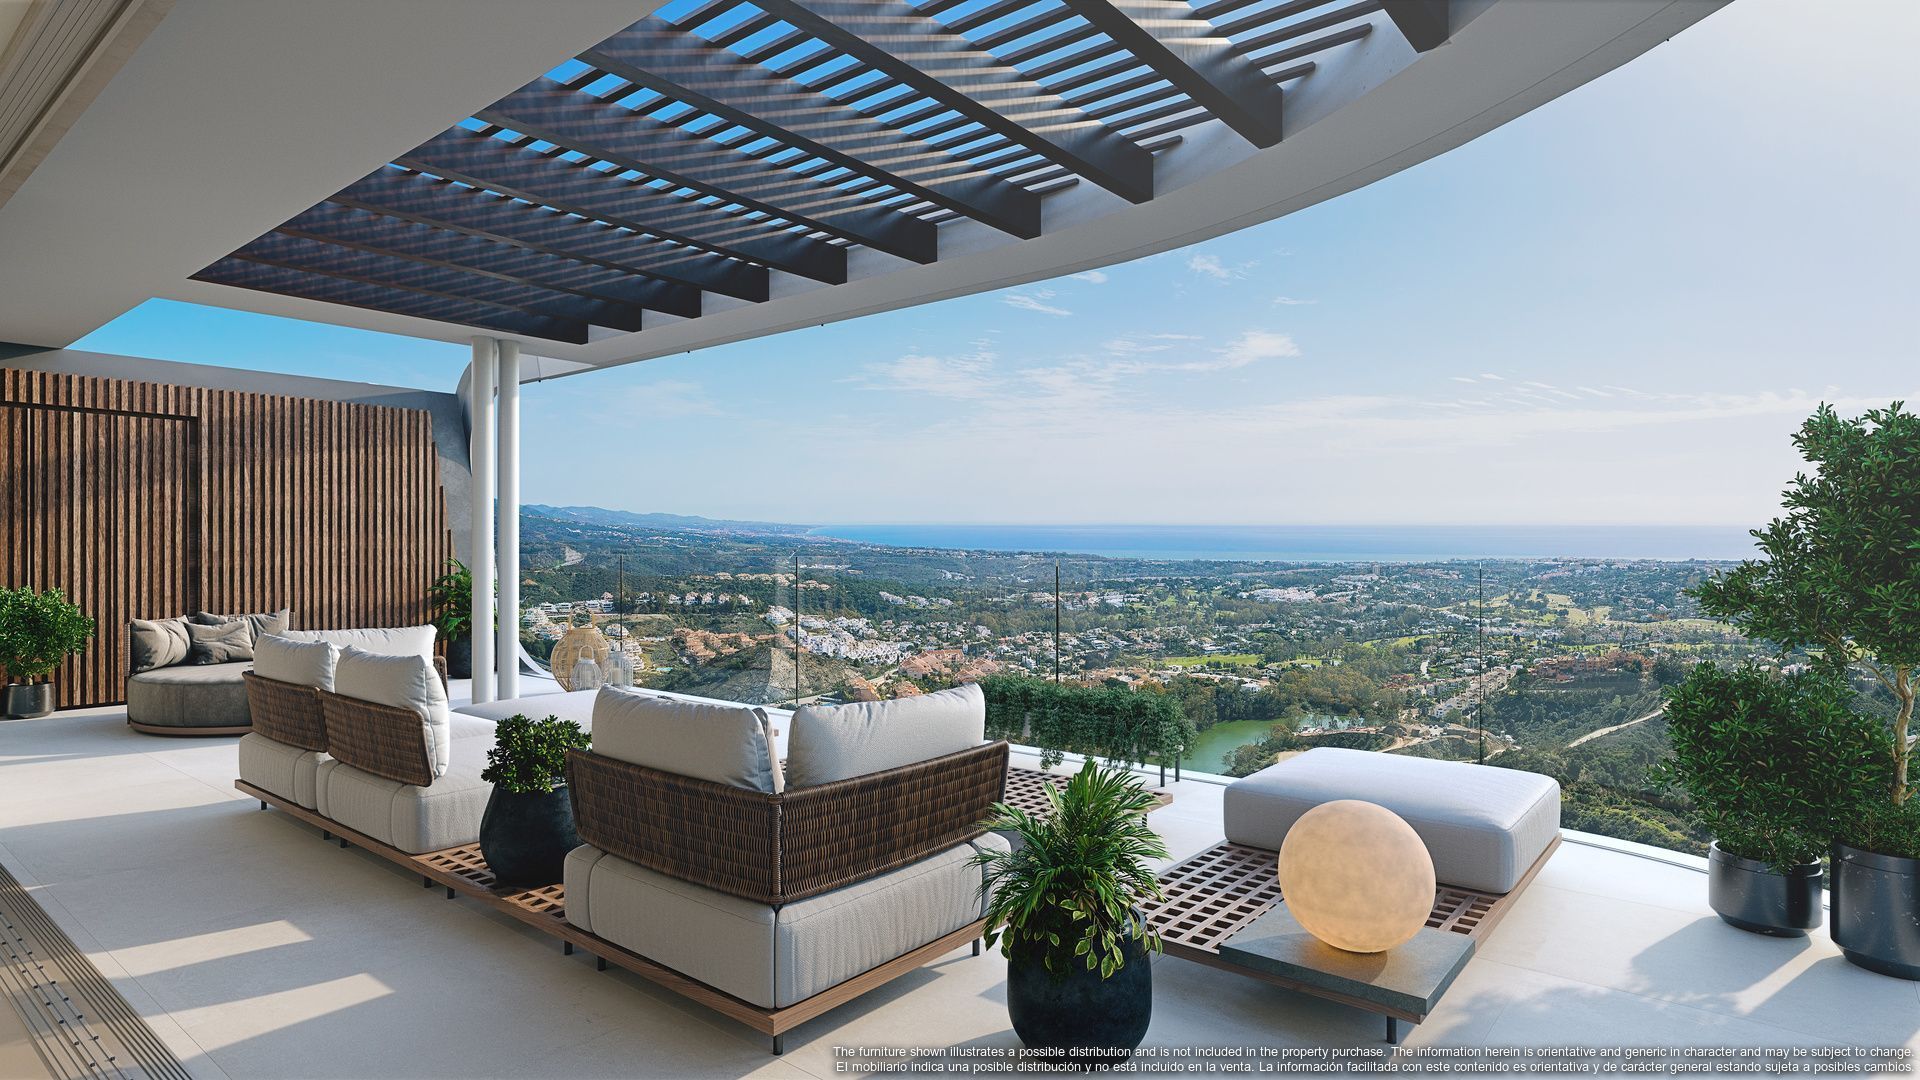 This latest development raises the bar for luxury living in Marbella, Benahavis foto-19